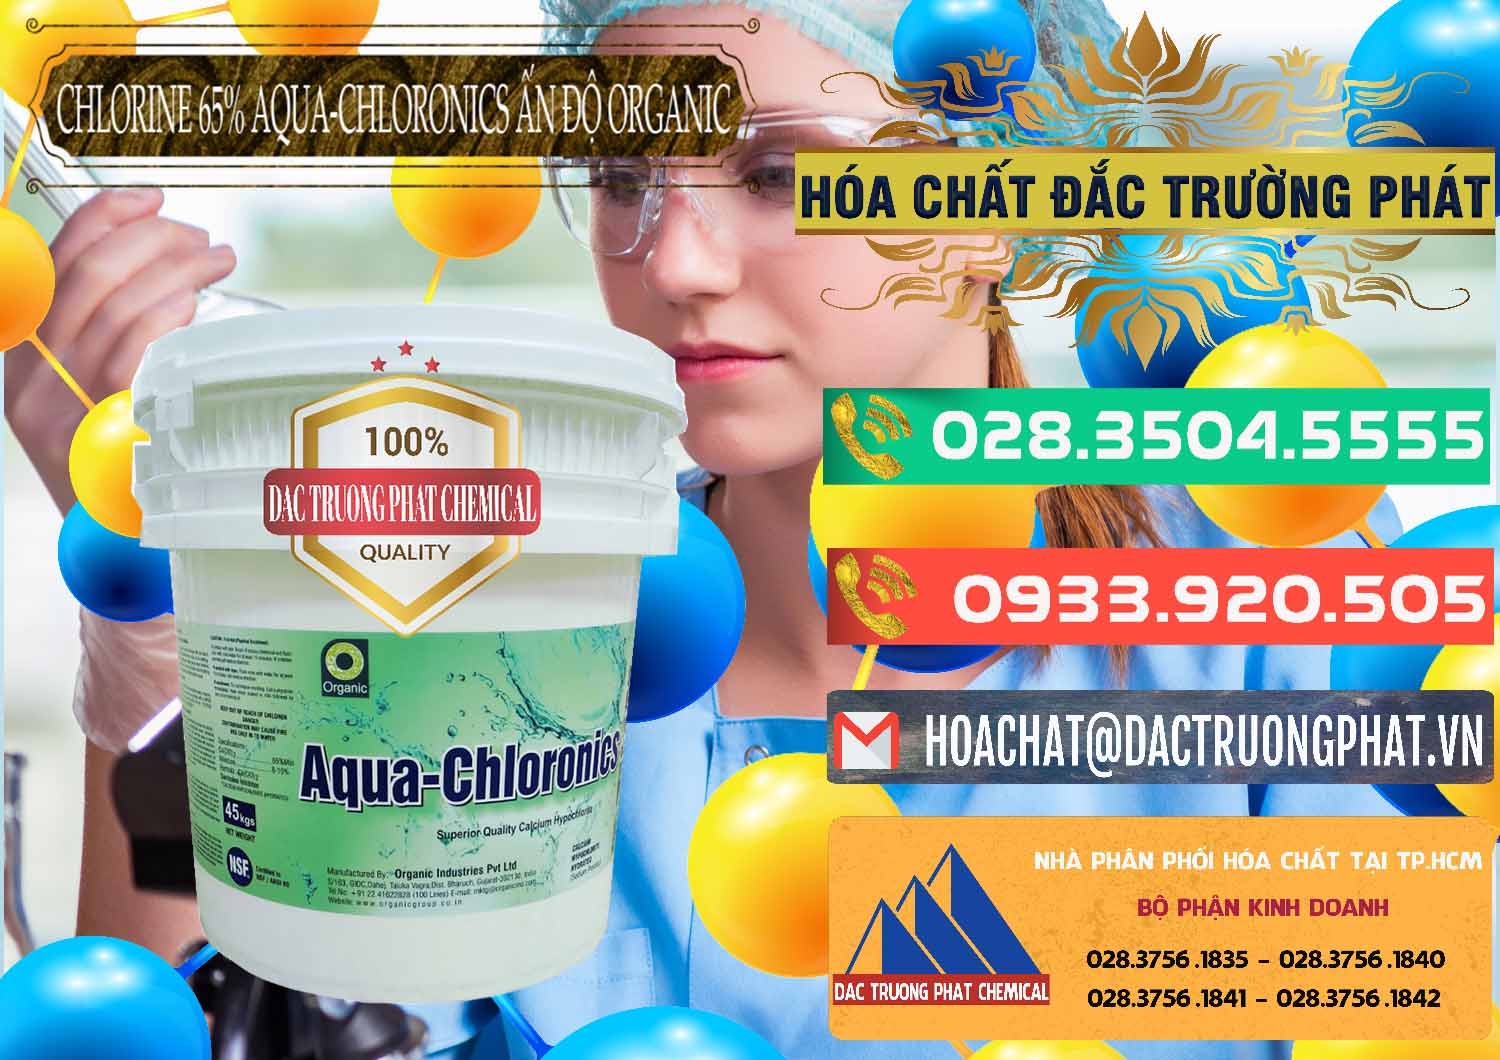 Nơi chuyên nhập khẩu và bán Chlorine – Clorin 65% Aqua-Chloronics Ấn Độ Organic India - 0210 - Cty phân phối & cung cấp hóa chất tại TP.HCM - congtyhoachat.com.vn